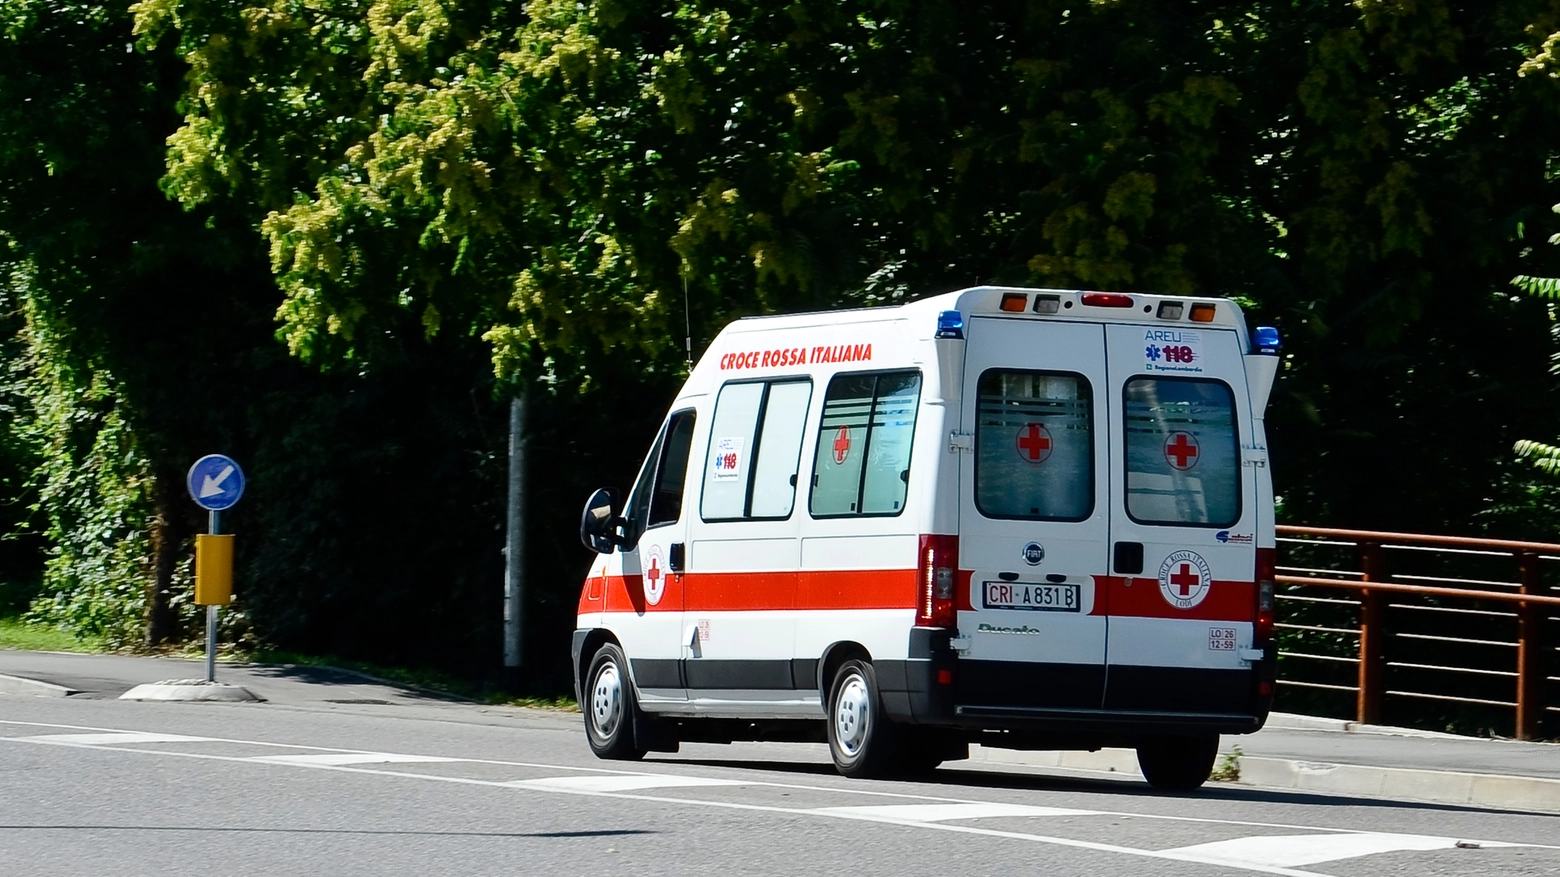 Un'ambulanza (Foto d'archivio Cavalleri)